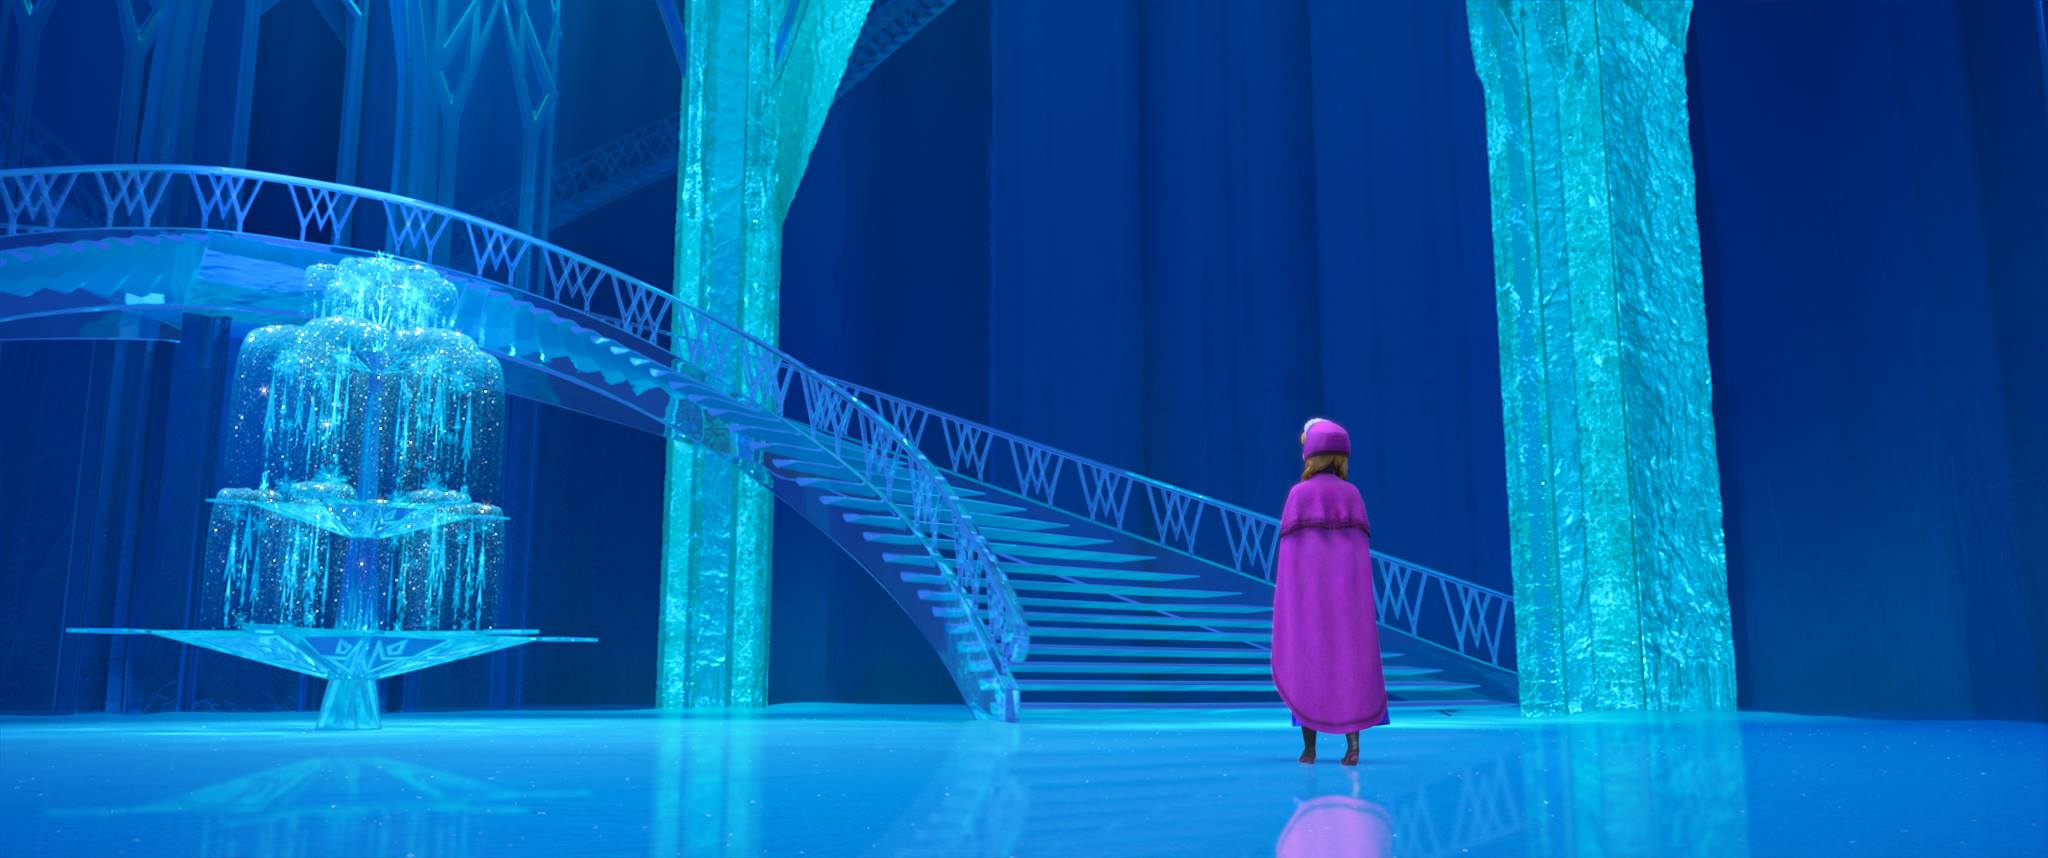 Nuevas Imágenes de 'Frozen' incluyendo el Palacio de Hielo 